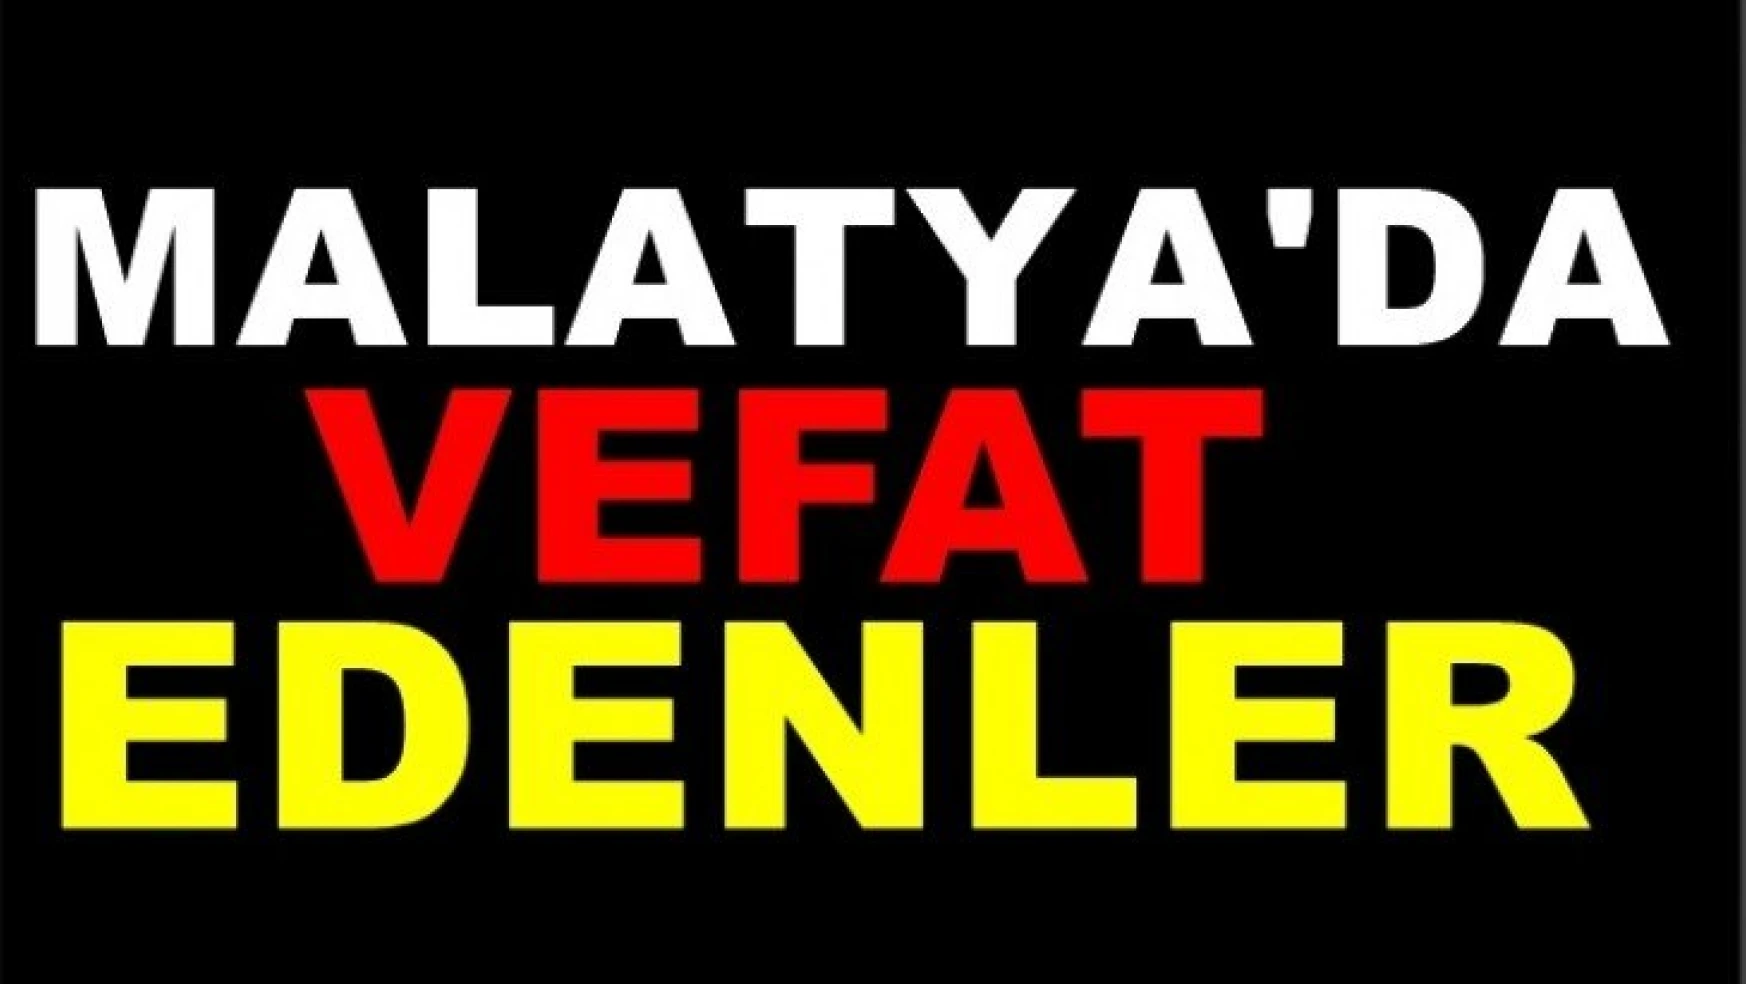 Malatya'da 21 kişi vefat etti